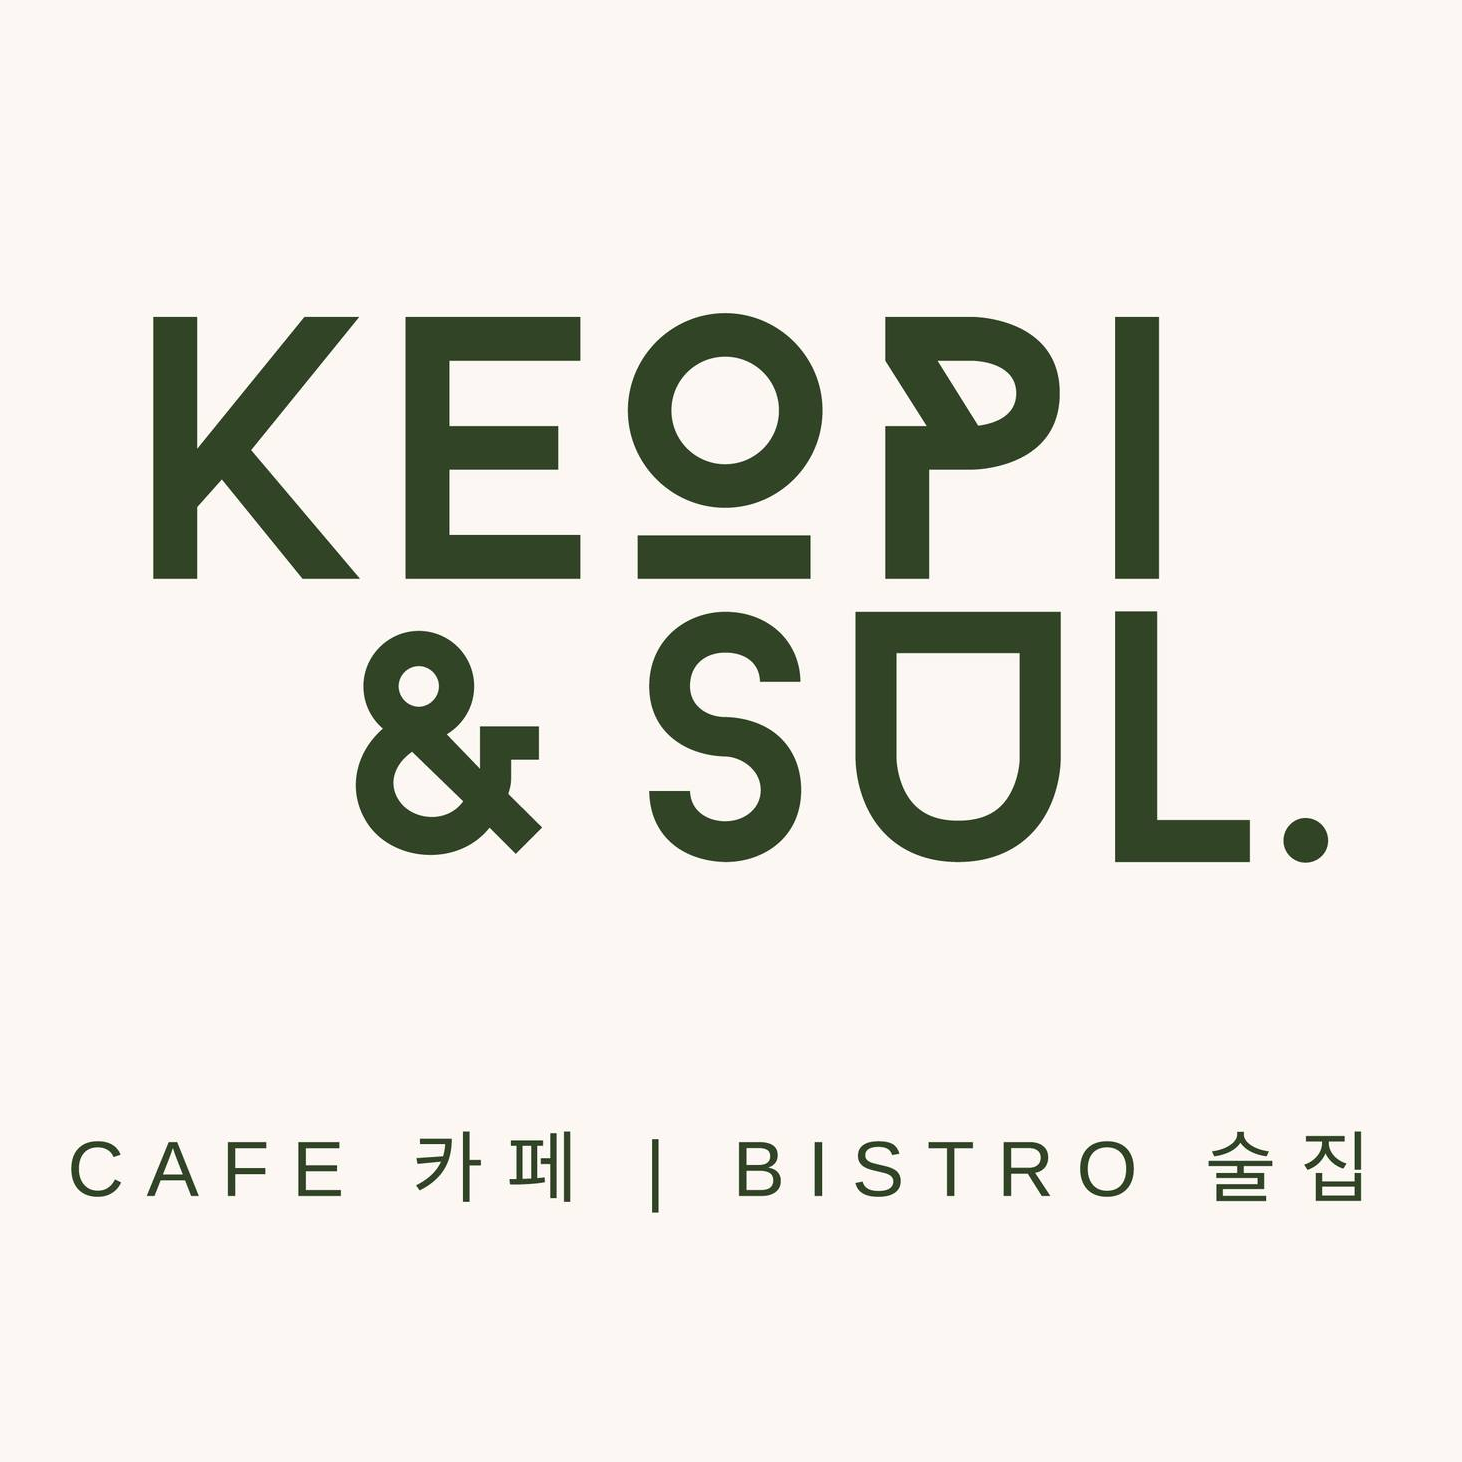 Keopi & Sul. - Cafe & Bistro logo